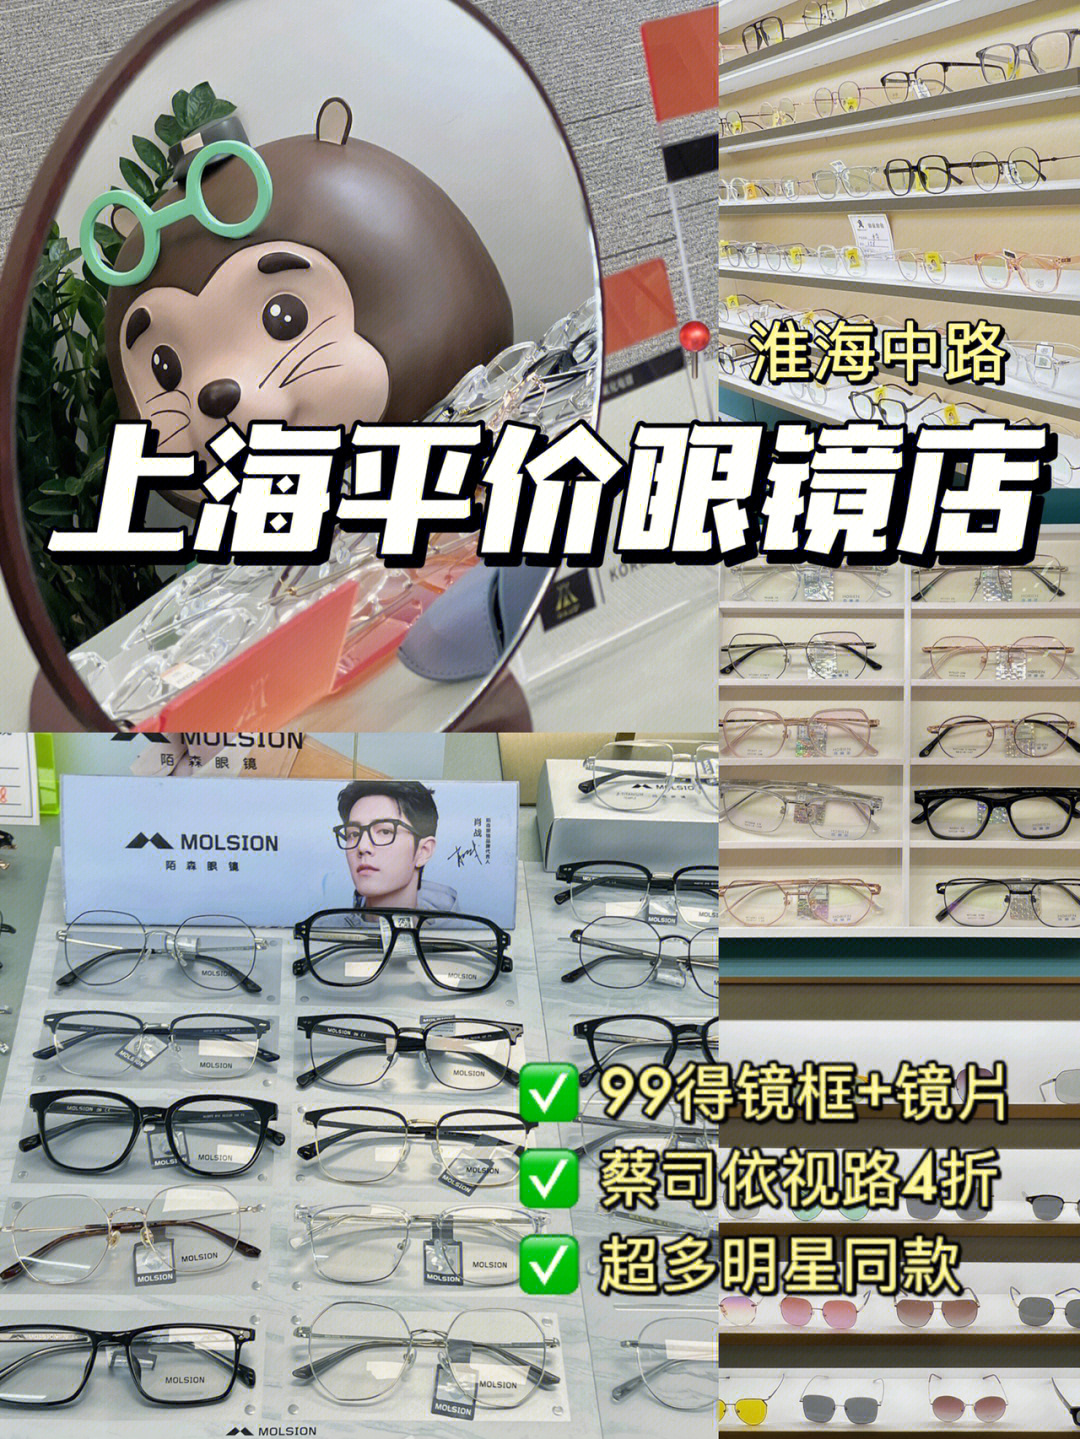 上海99r配眼镜60这家店的性价比也太高了吧